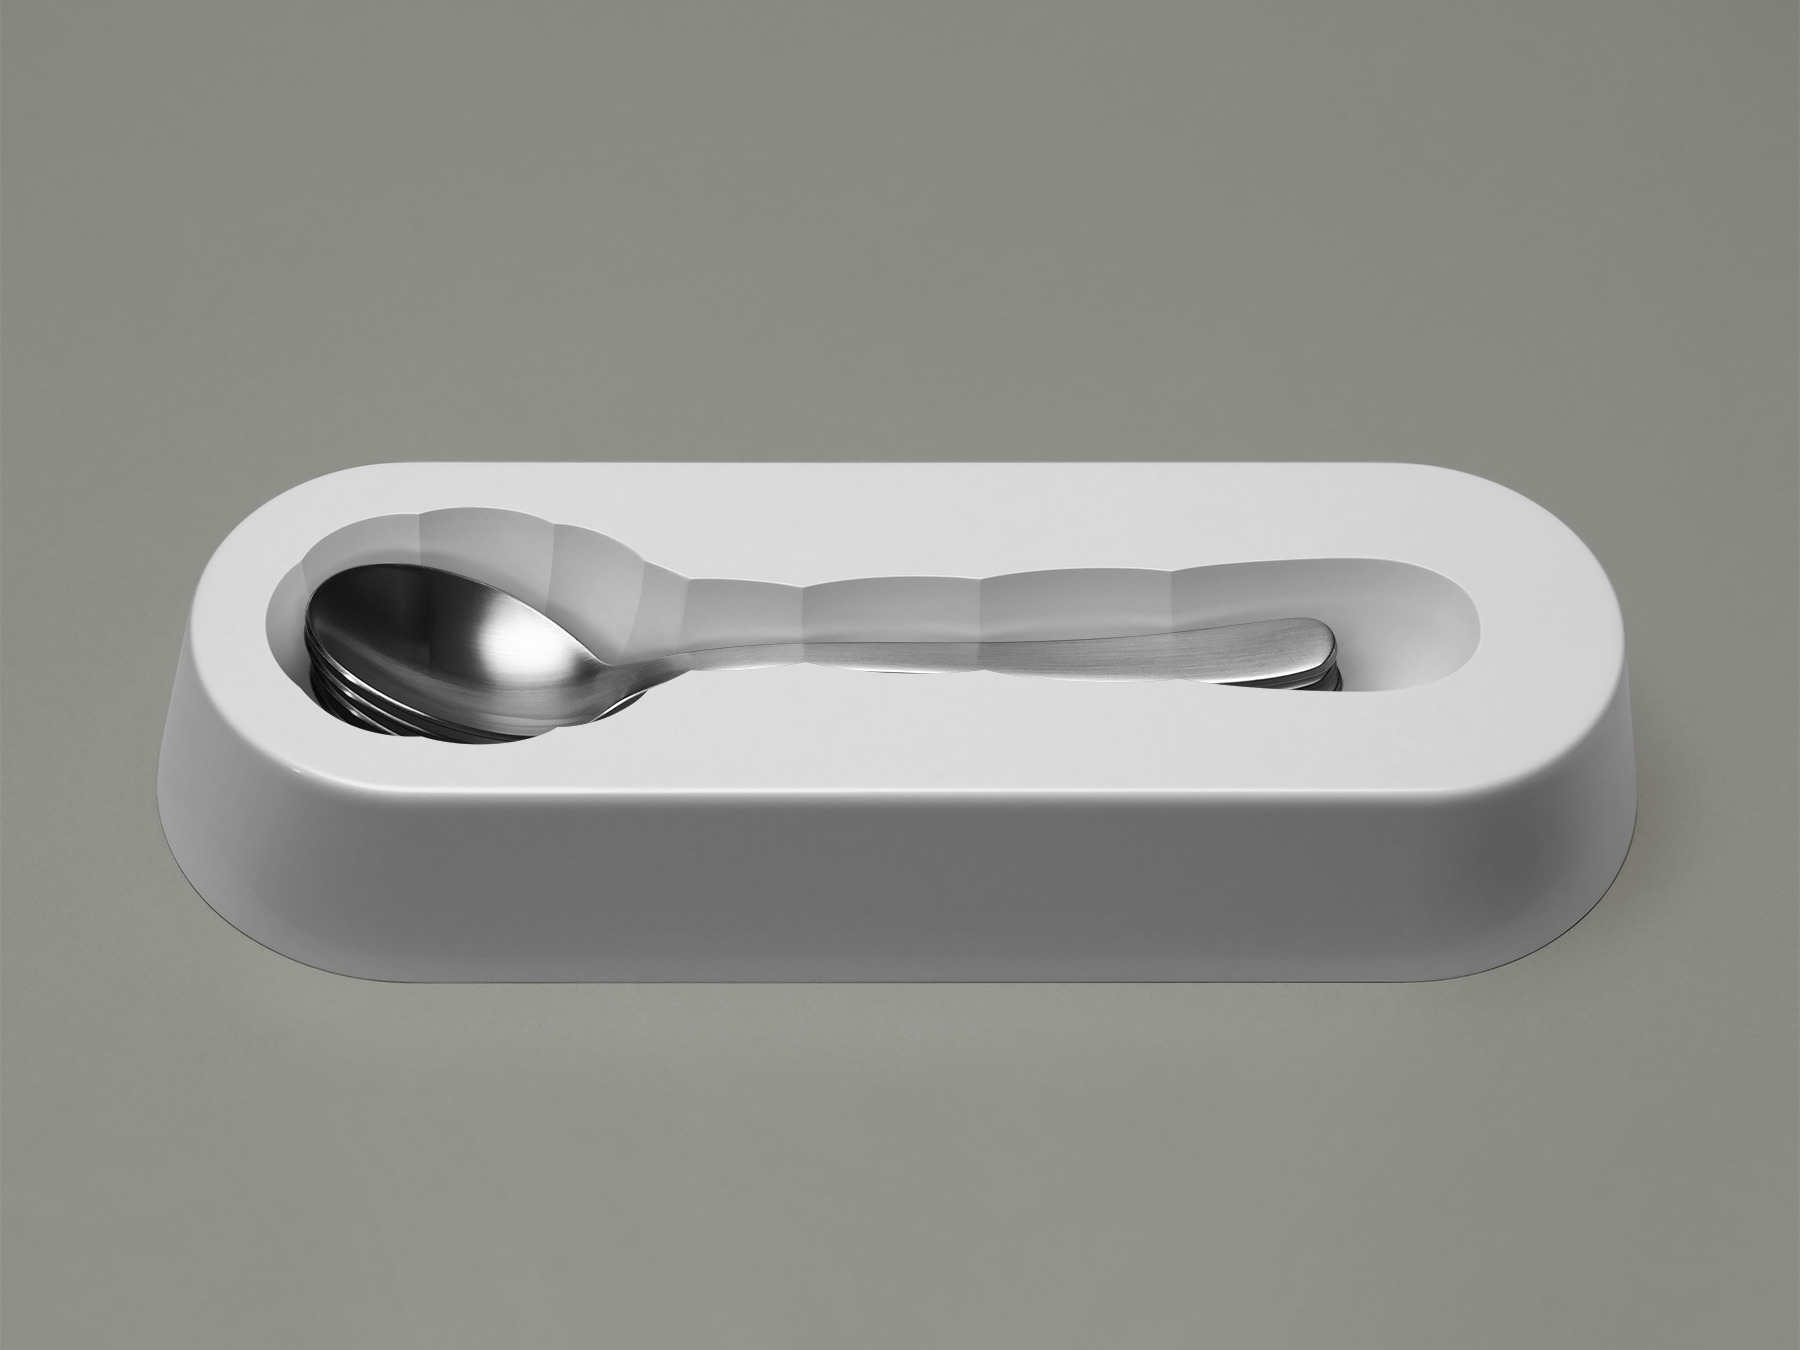 Spoon Tray